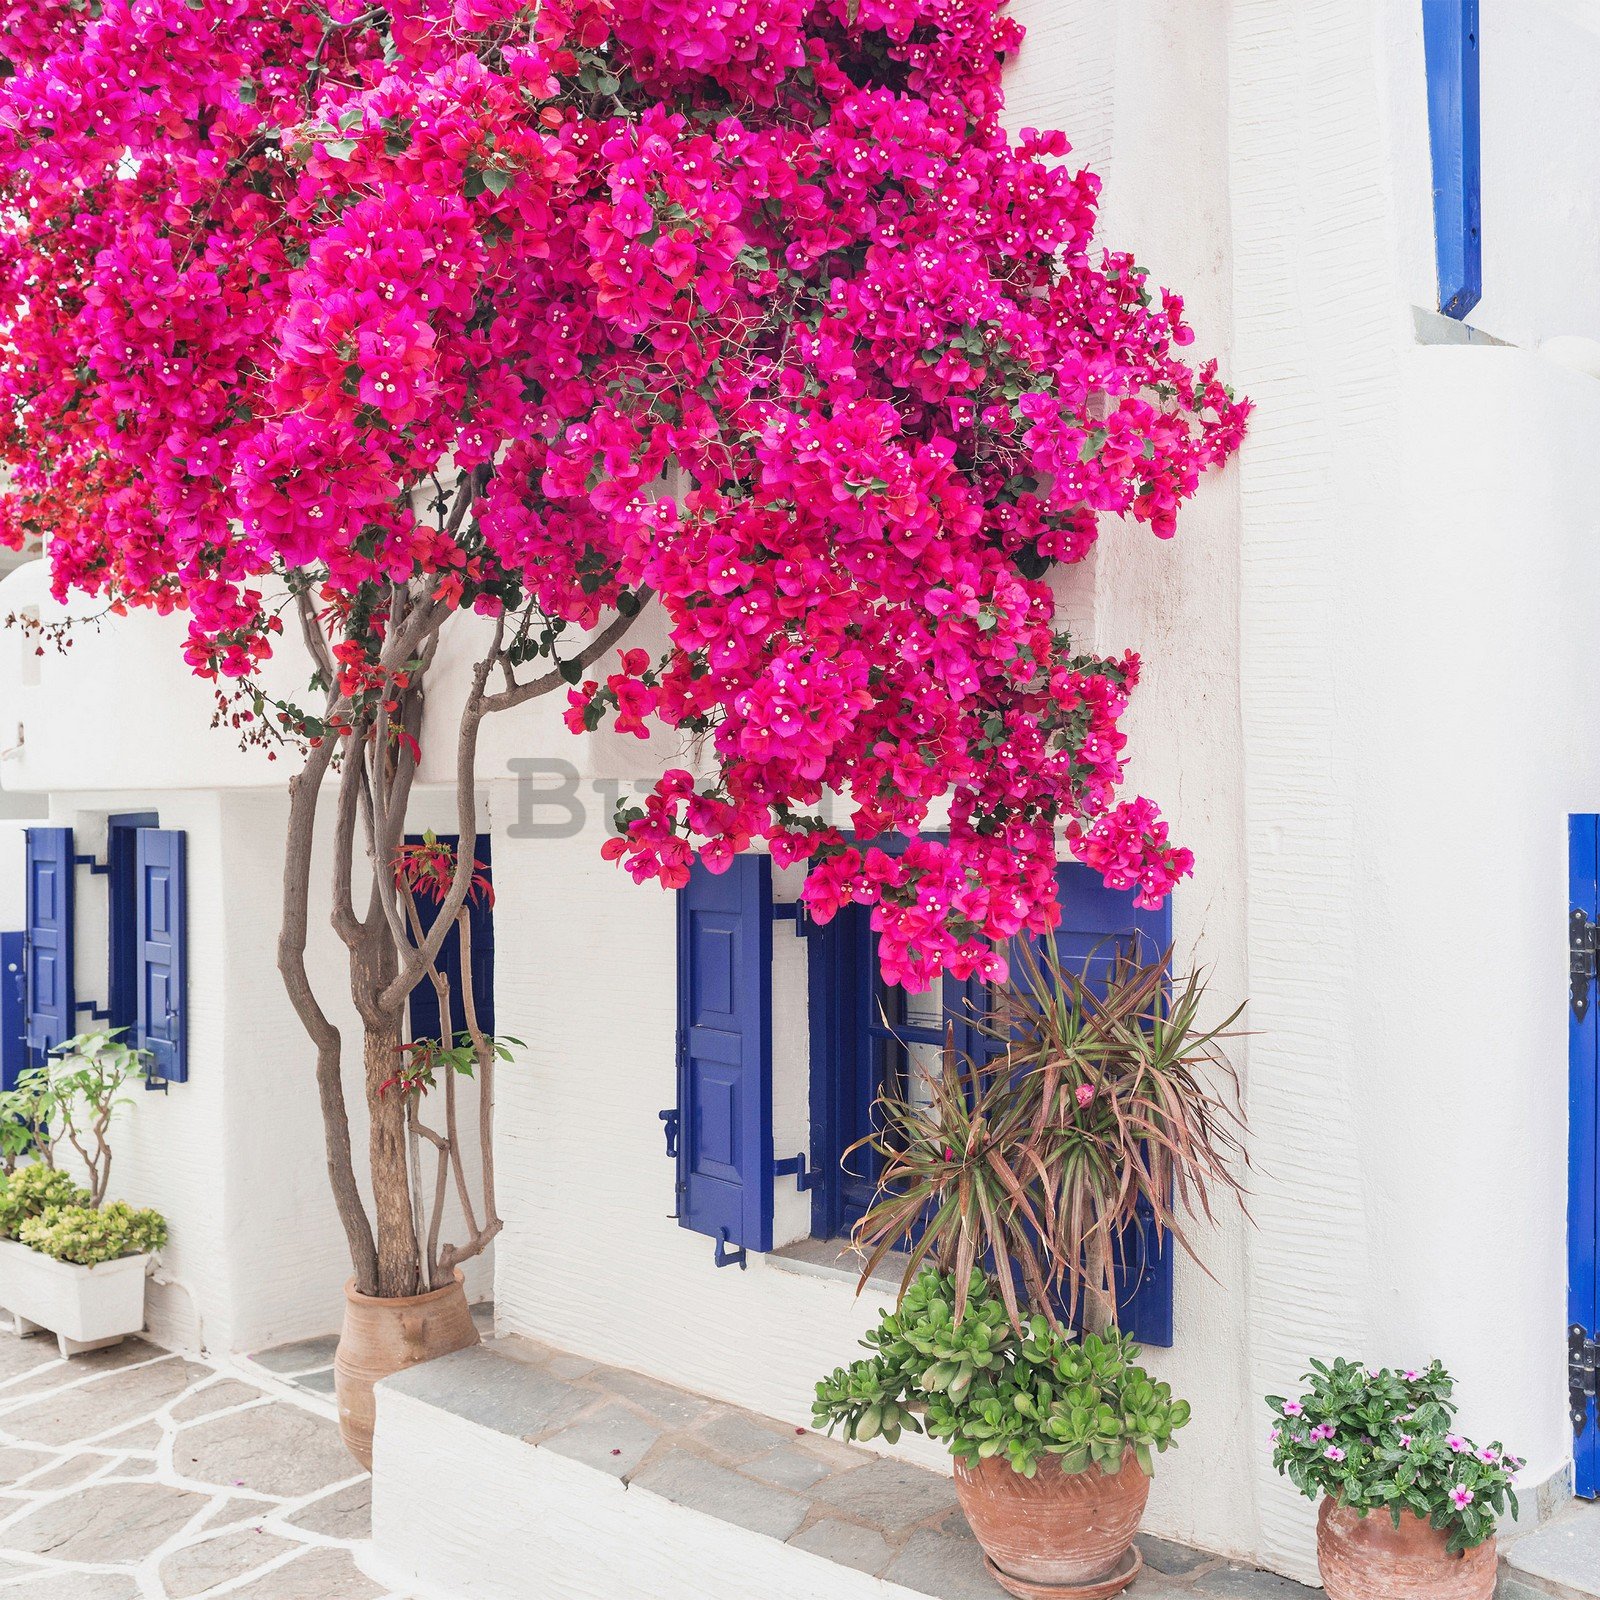 Fototapet vlies: Flori de stradă grecească (3) - 368x254 cm